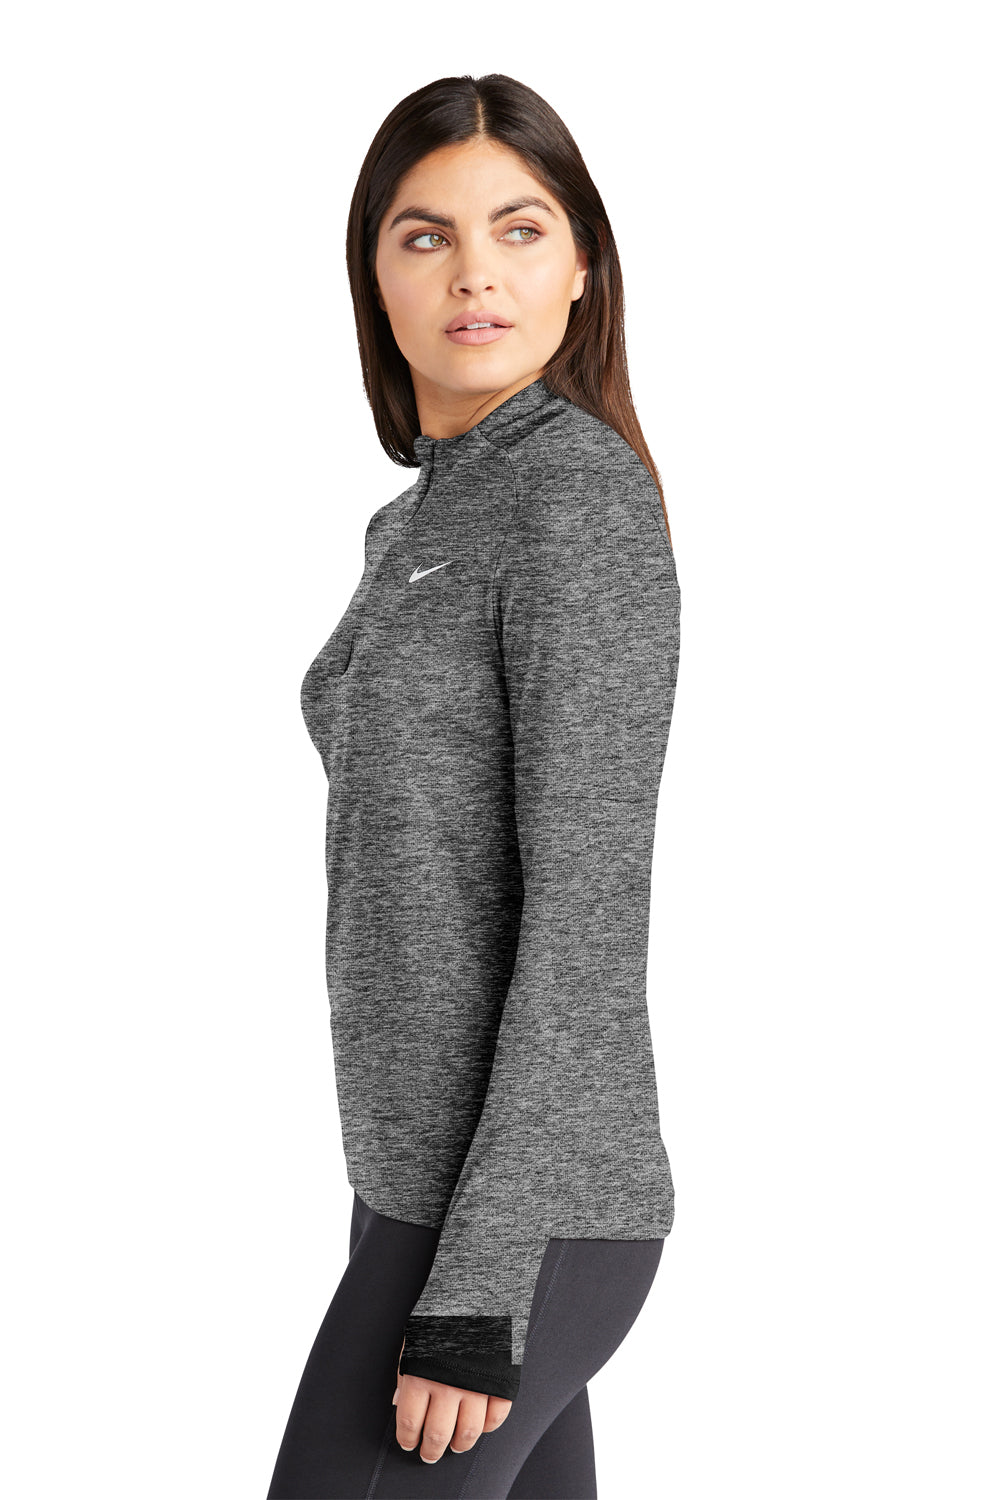 Nike NKDH4951 Womens Element Dri-Fit Moisture Wicking 1/4 Zip Sweatshirt Heather Black Model Side